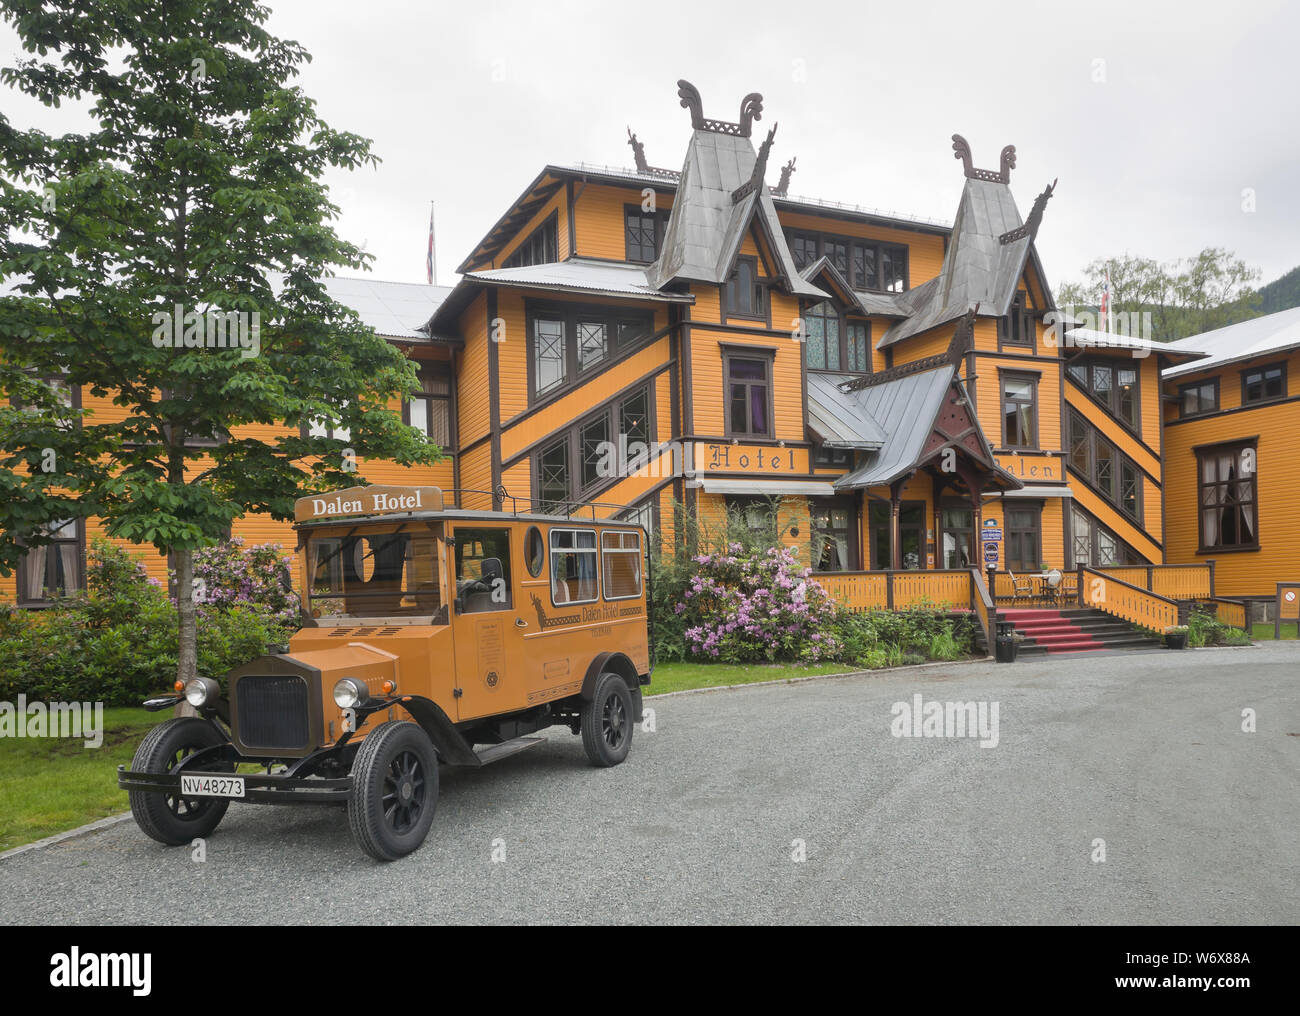 Le quartier historique de El Carmen Hotel in Telemark Norvège, un grand bâtiment en bois de 1894, toujours ouvert pour les voyageurs d'aujourd'hui avec son bus de l'hôtel vintage Banque D'Images